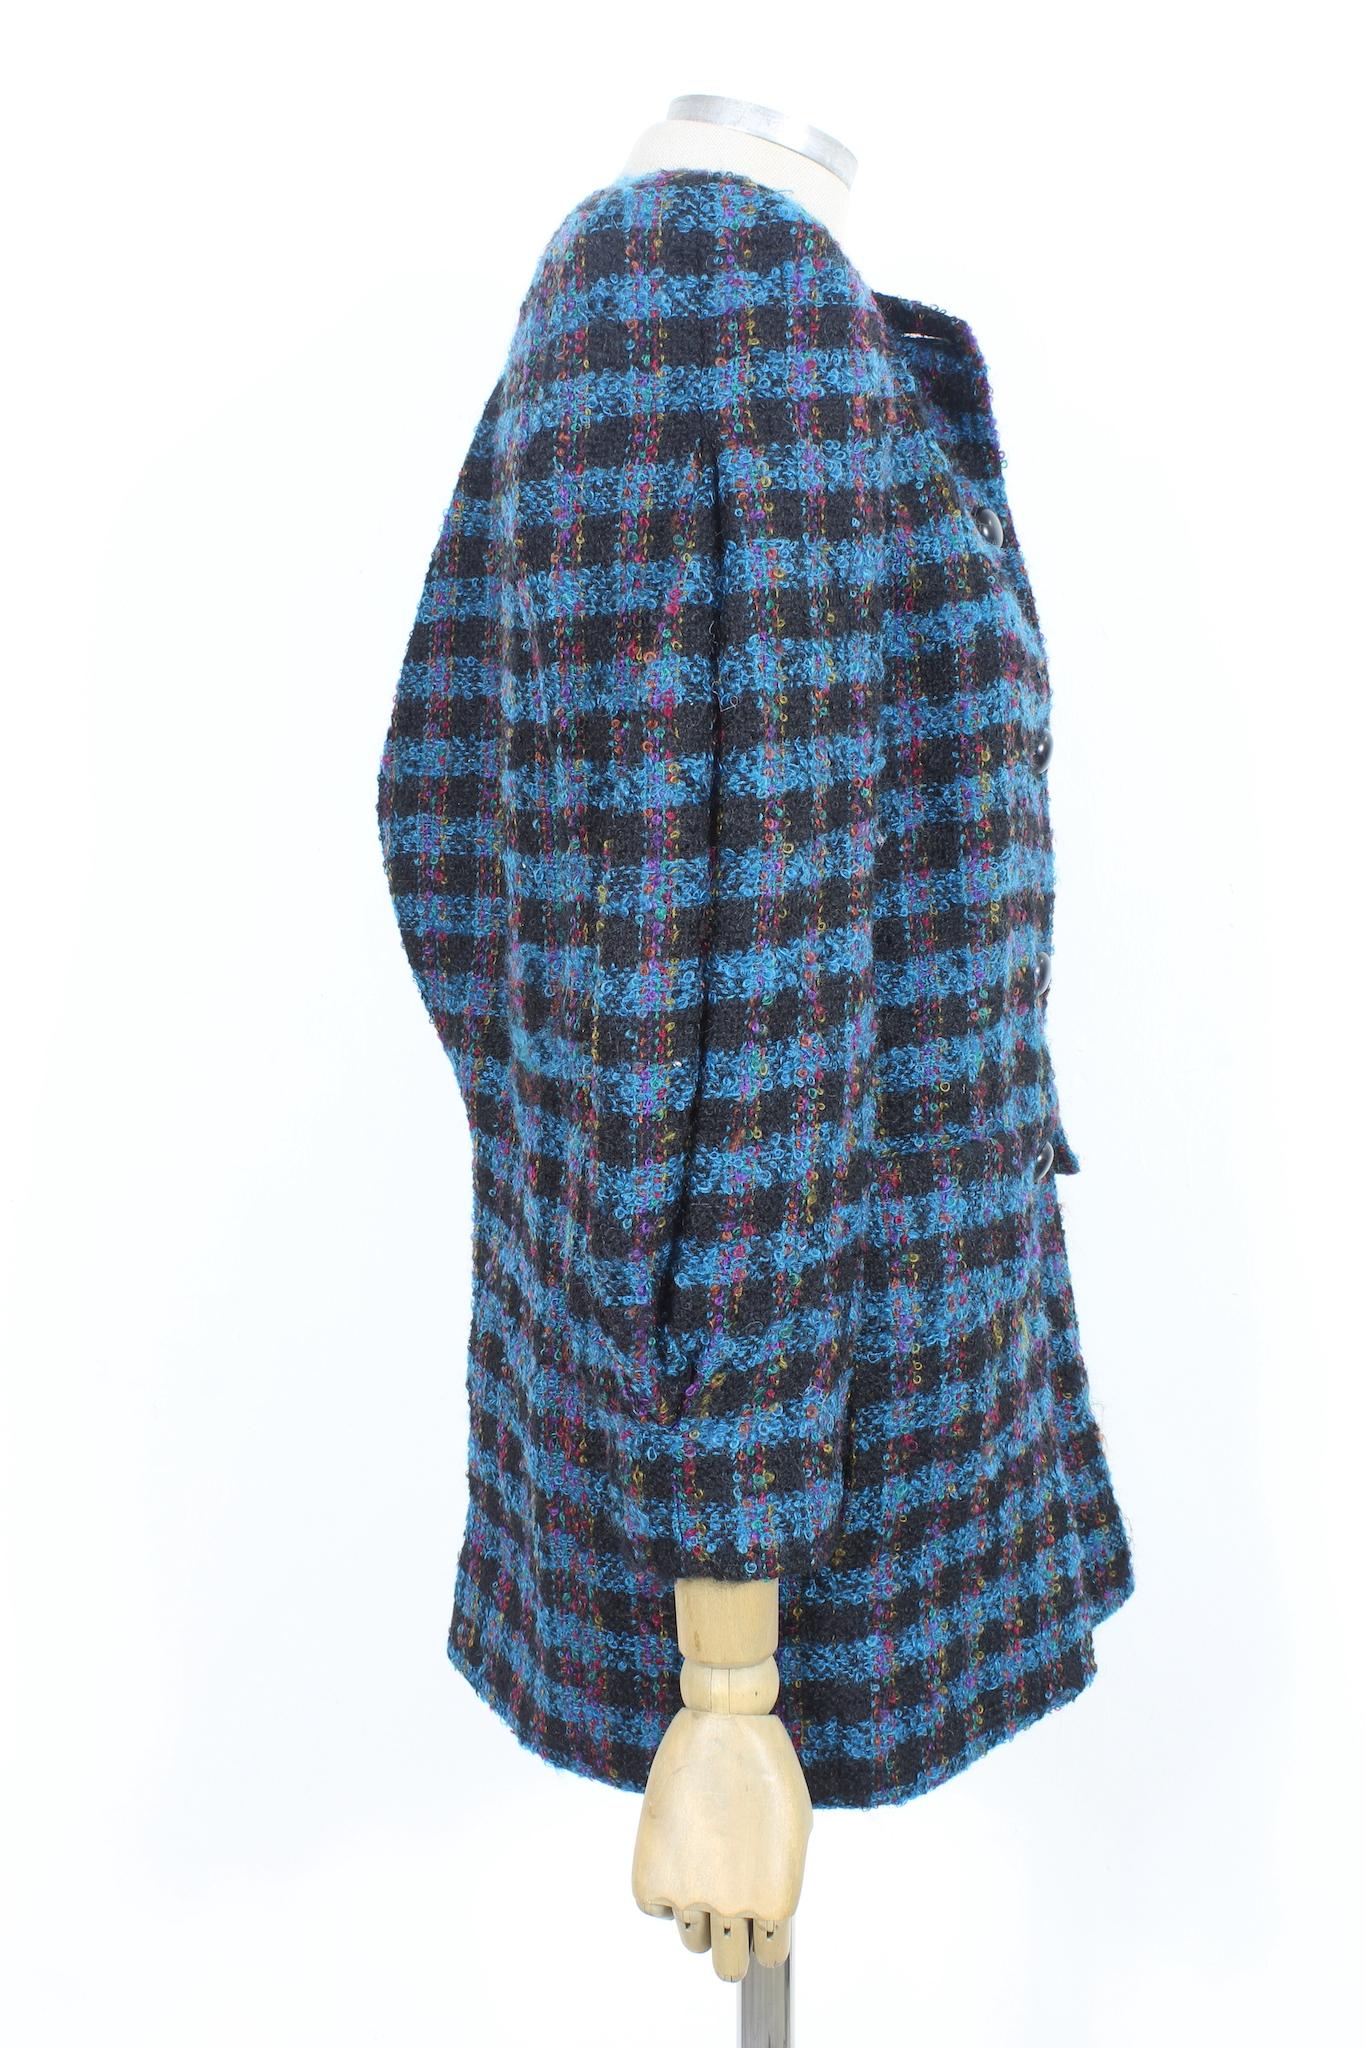 Manteau en laine bouclée bleu Nina Ricci Vintage 80s Excellent état à Brindisi, Bt